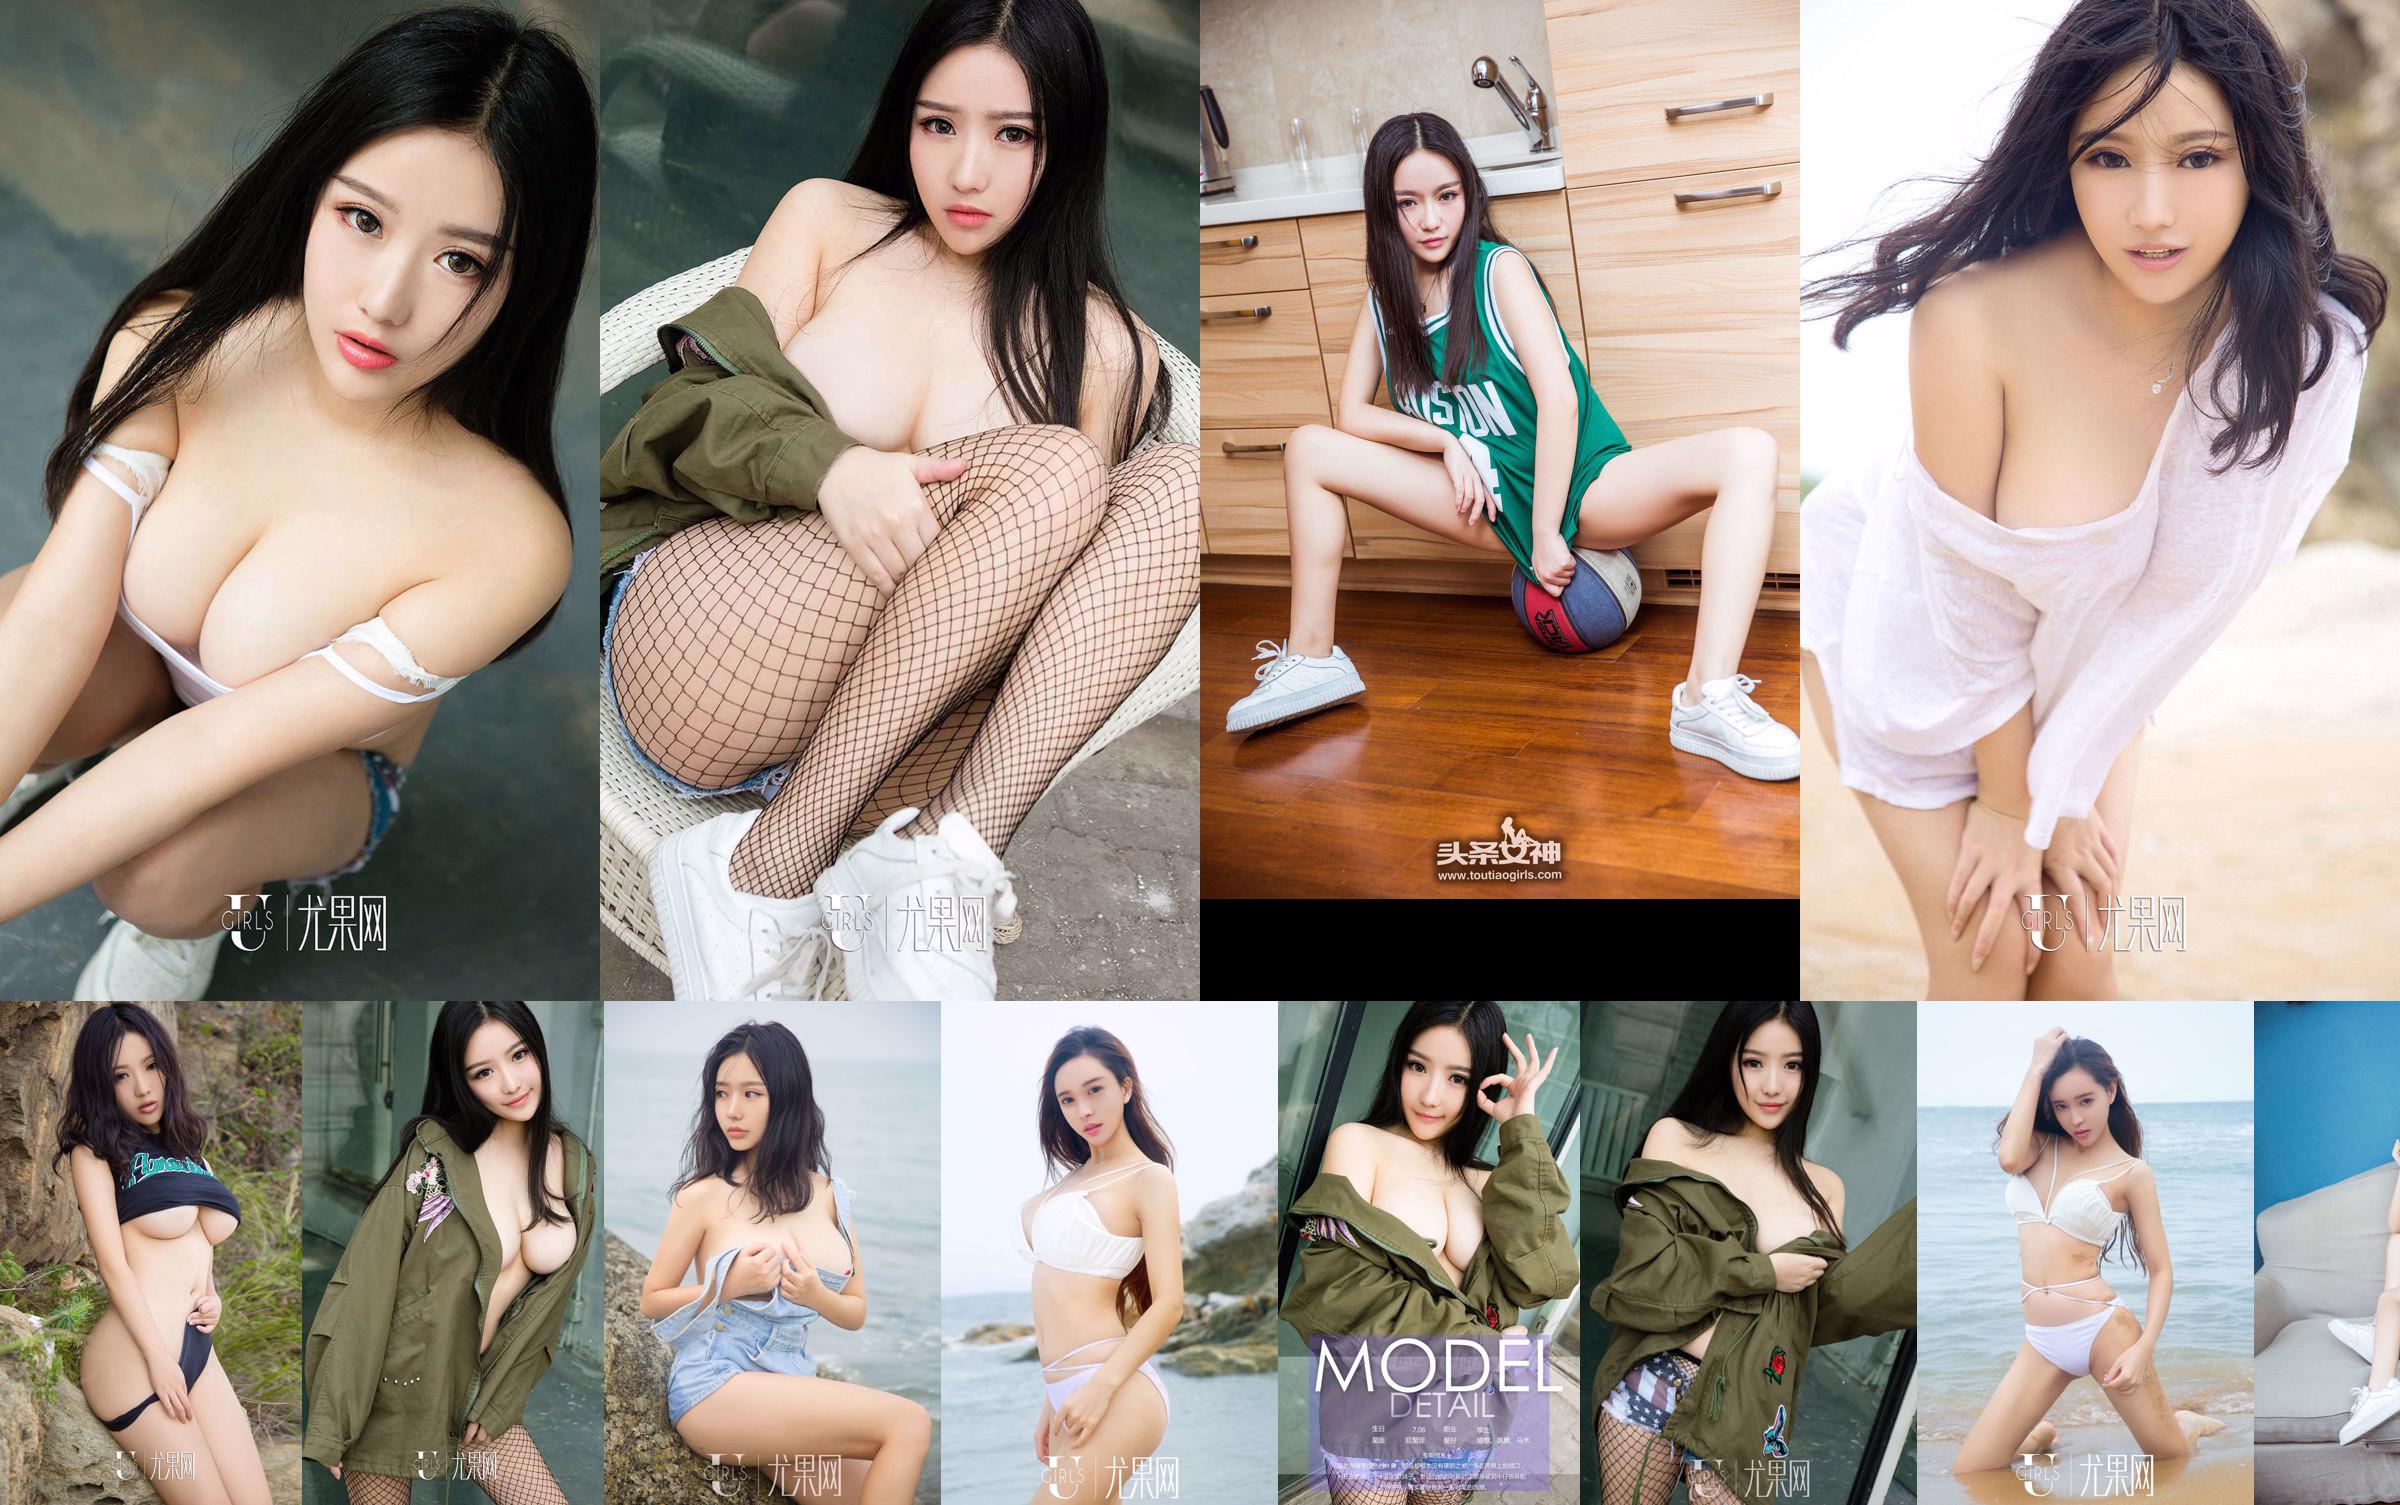 Ni Yeteng "Cô gái mềm mại trong quân phục" [Youguoquan] No.714 No.1311c4 Trang 1